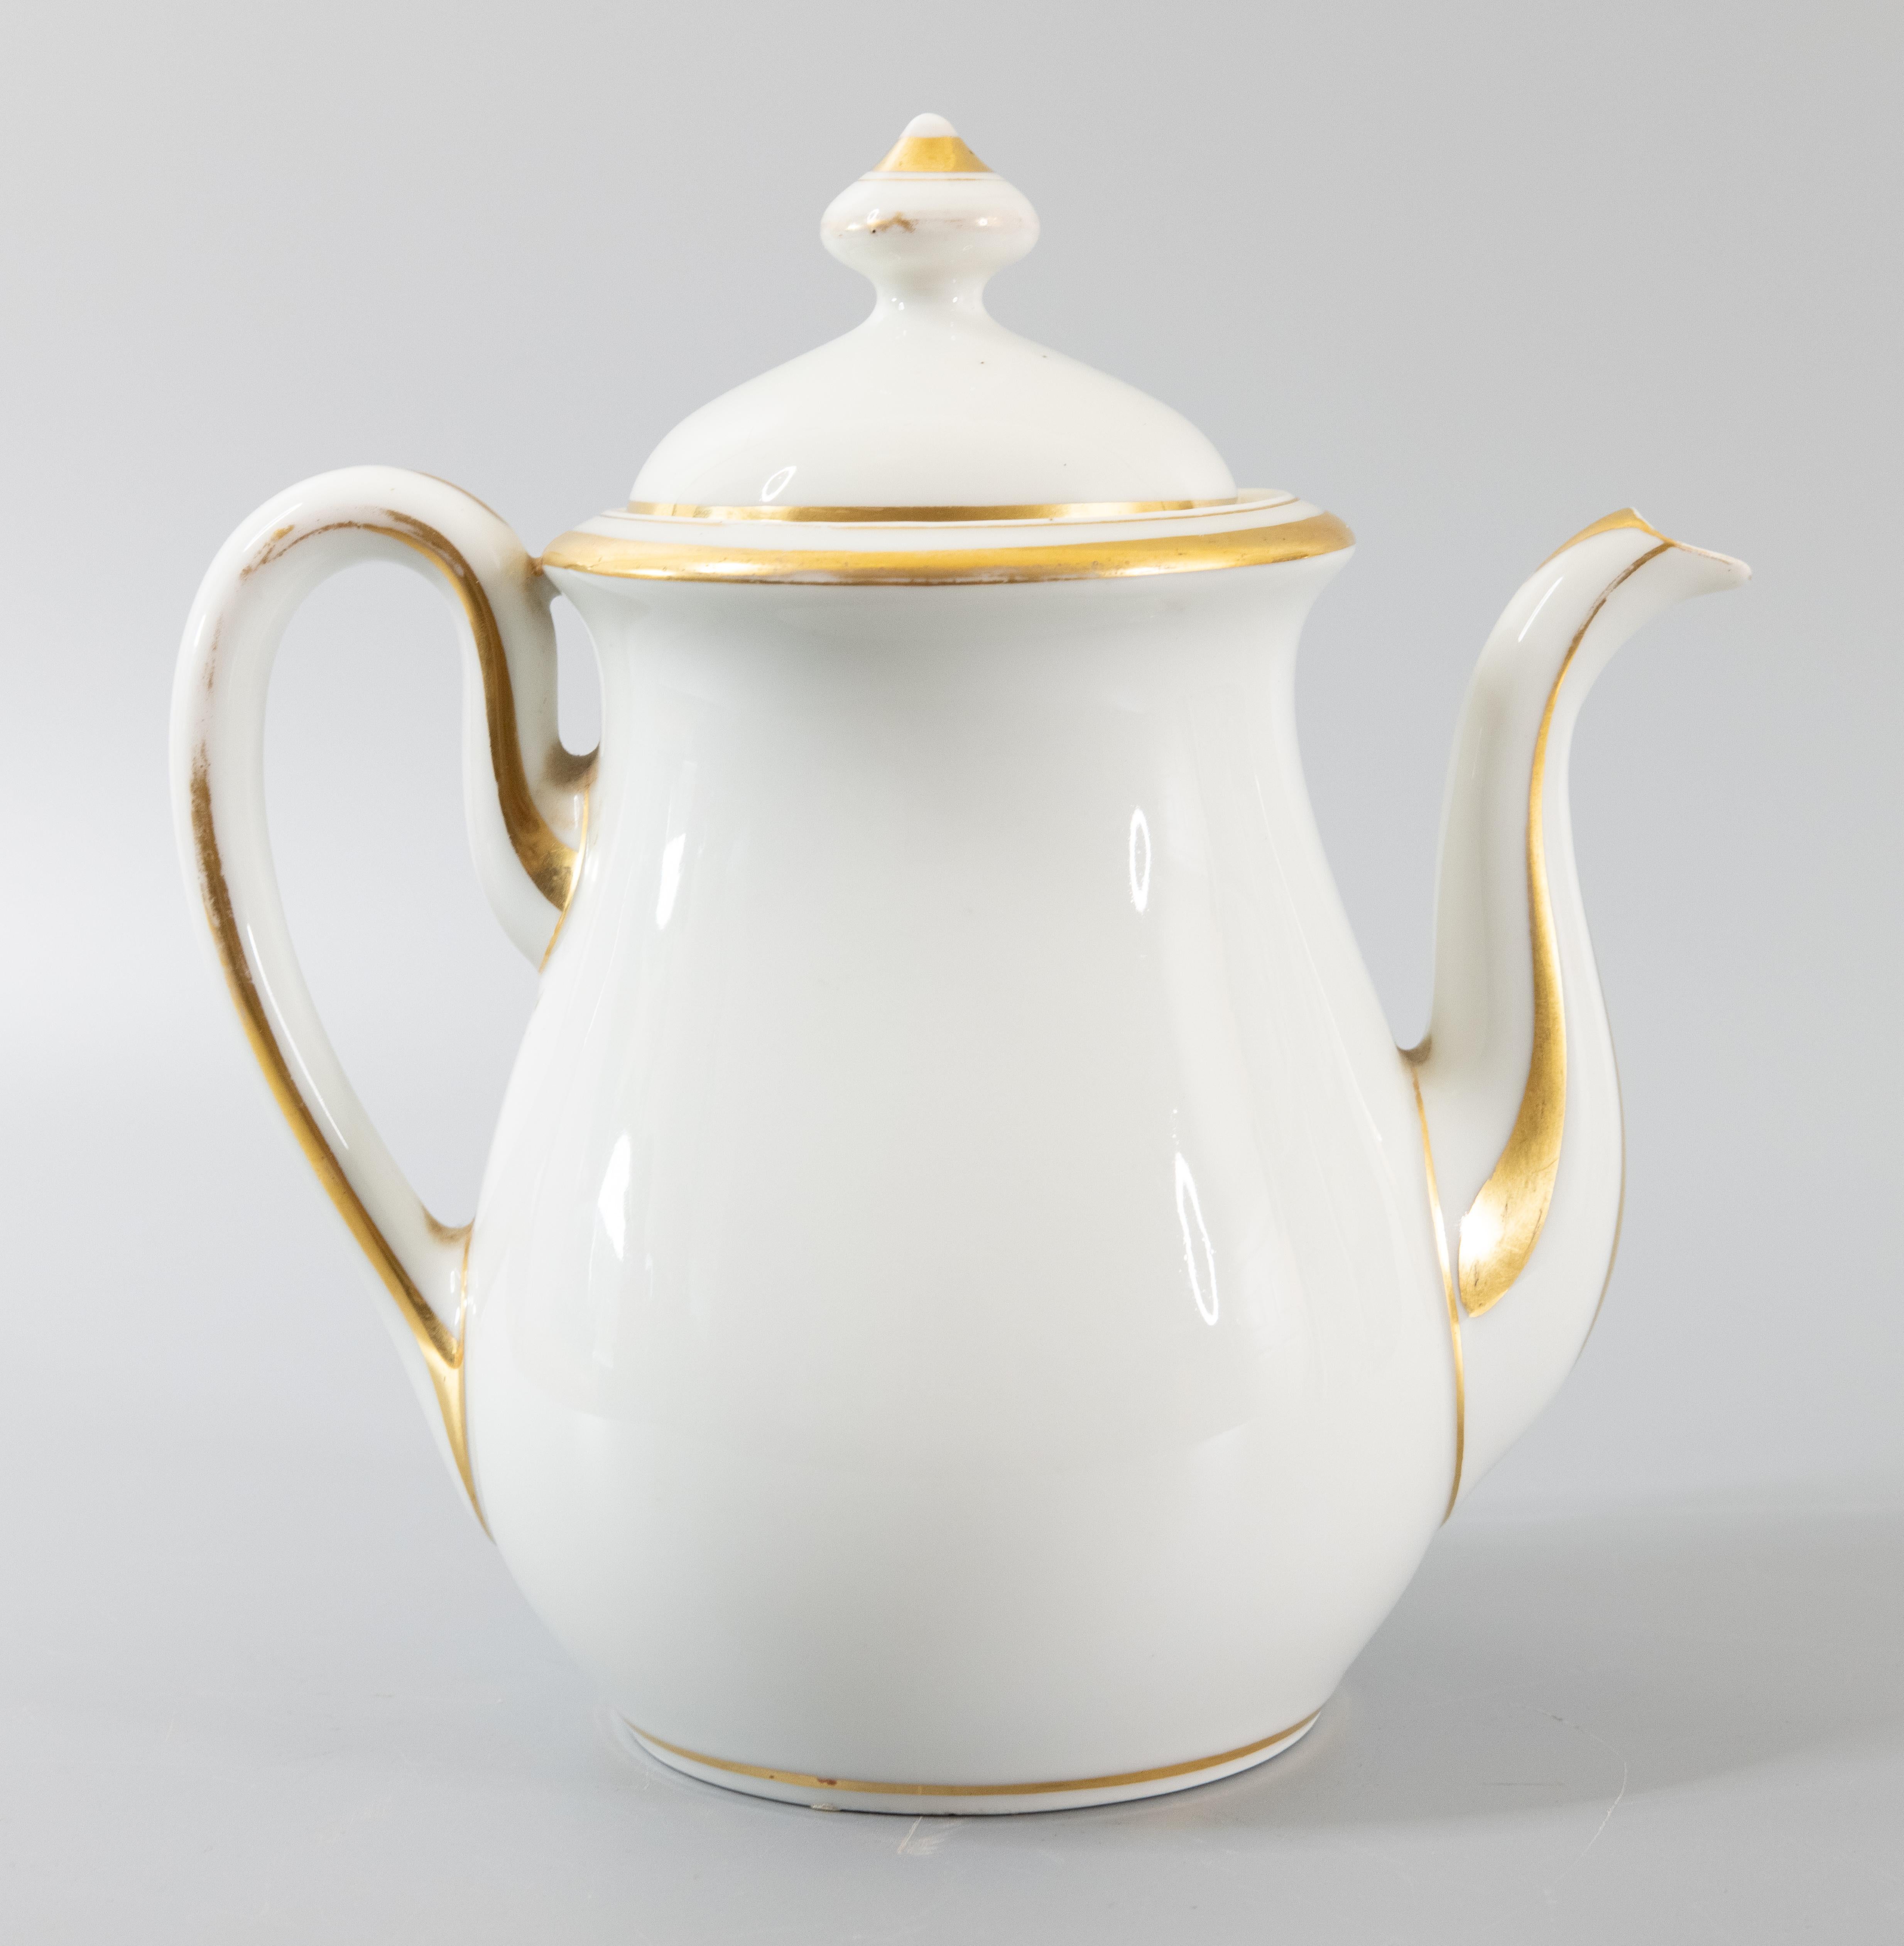 Eine hervorragende antike Französisch Old Paris 19. Jahrhundert, auch als Vieux Paris, Sahne-Porzellan-Deckel Teekanne oder Kaffeekanne mit vergoldeten Akzenten und ein Schreiben der Herkunft bezeichnet. Es wäre eine schöne Ergänzung zu einer